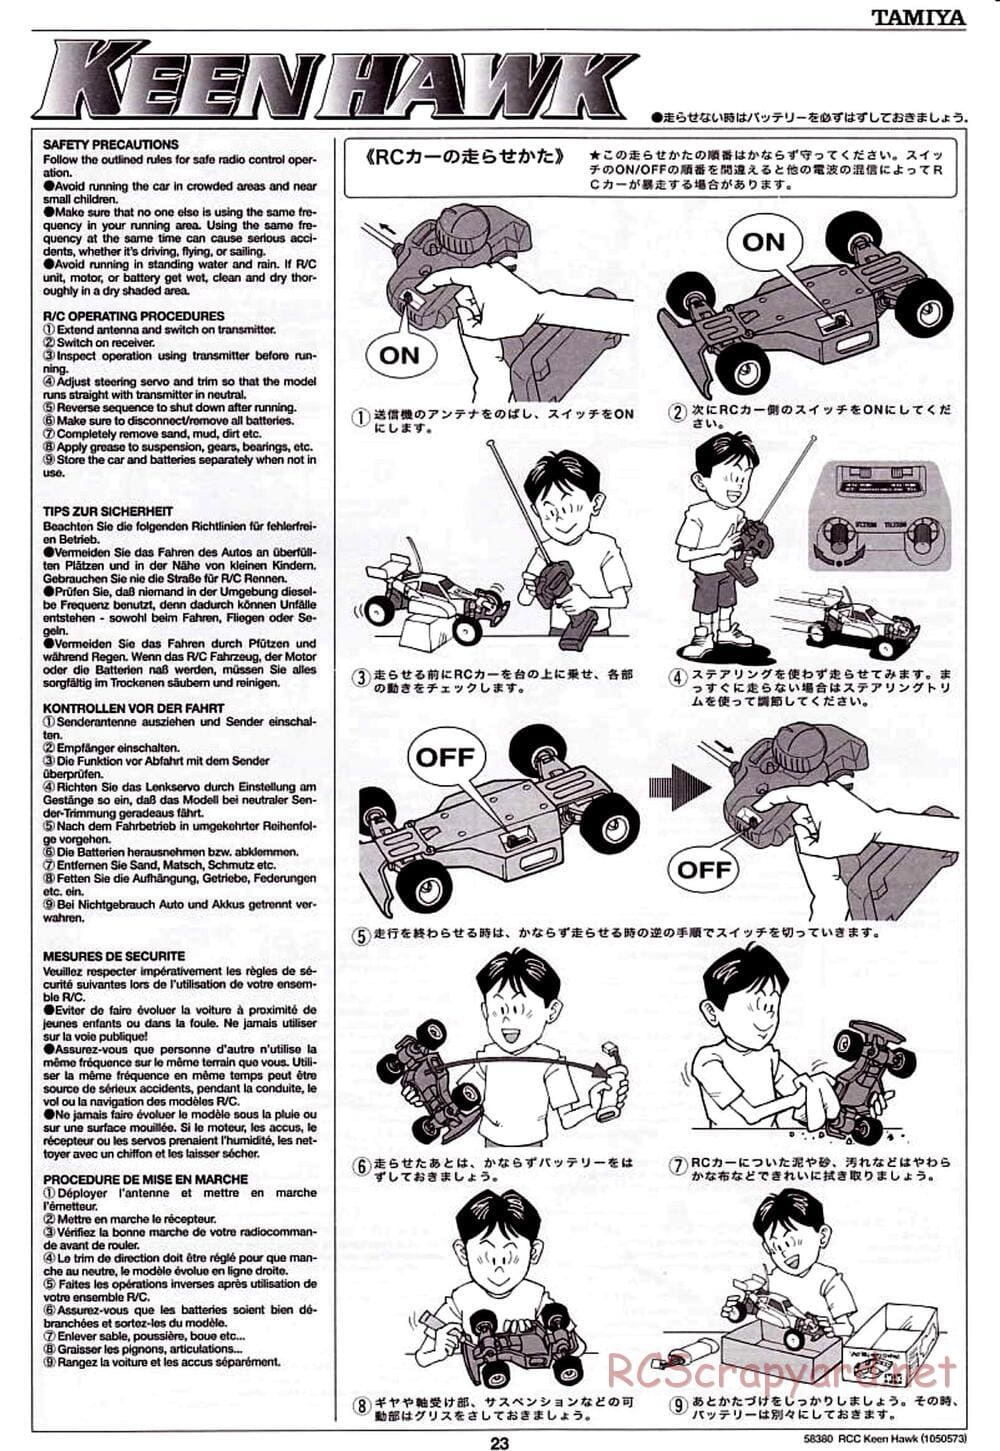 Tamiya - Keen Hawk Chassis - Manual - Page 23